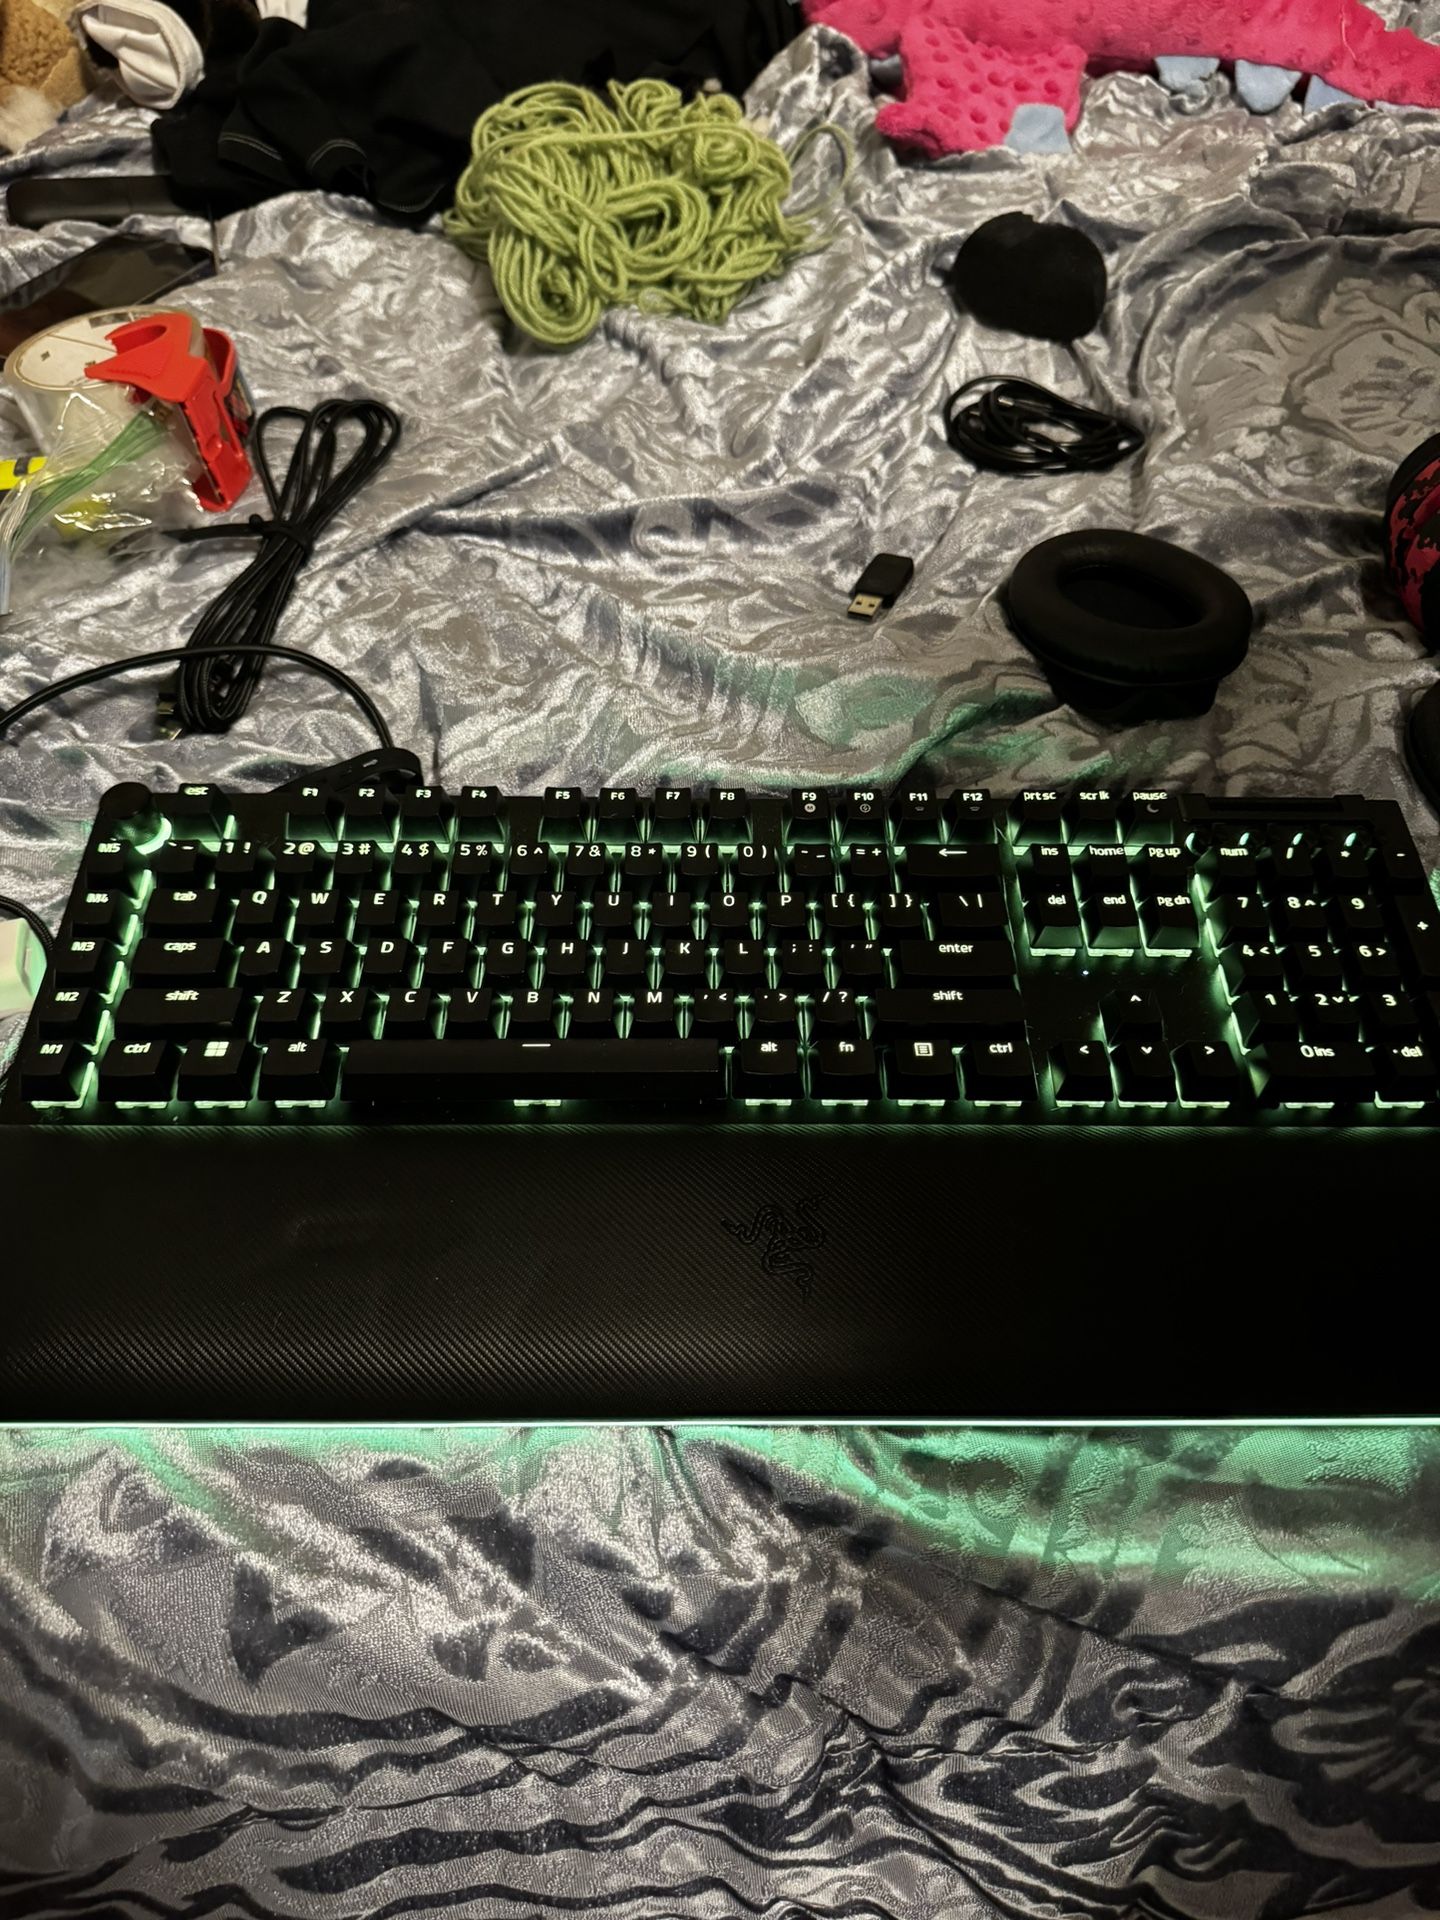 Razer Black Widow V4 Pro Keyboard